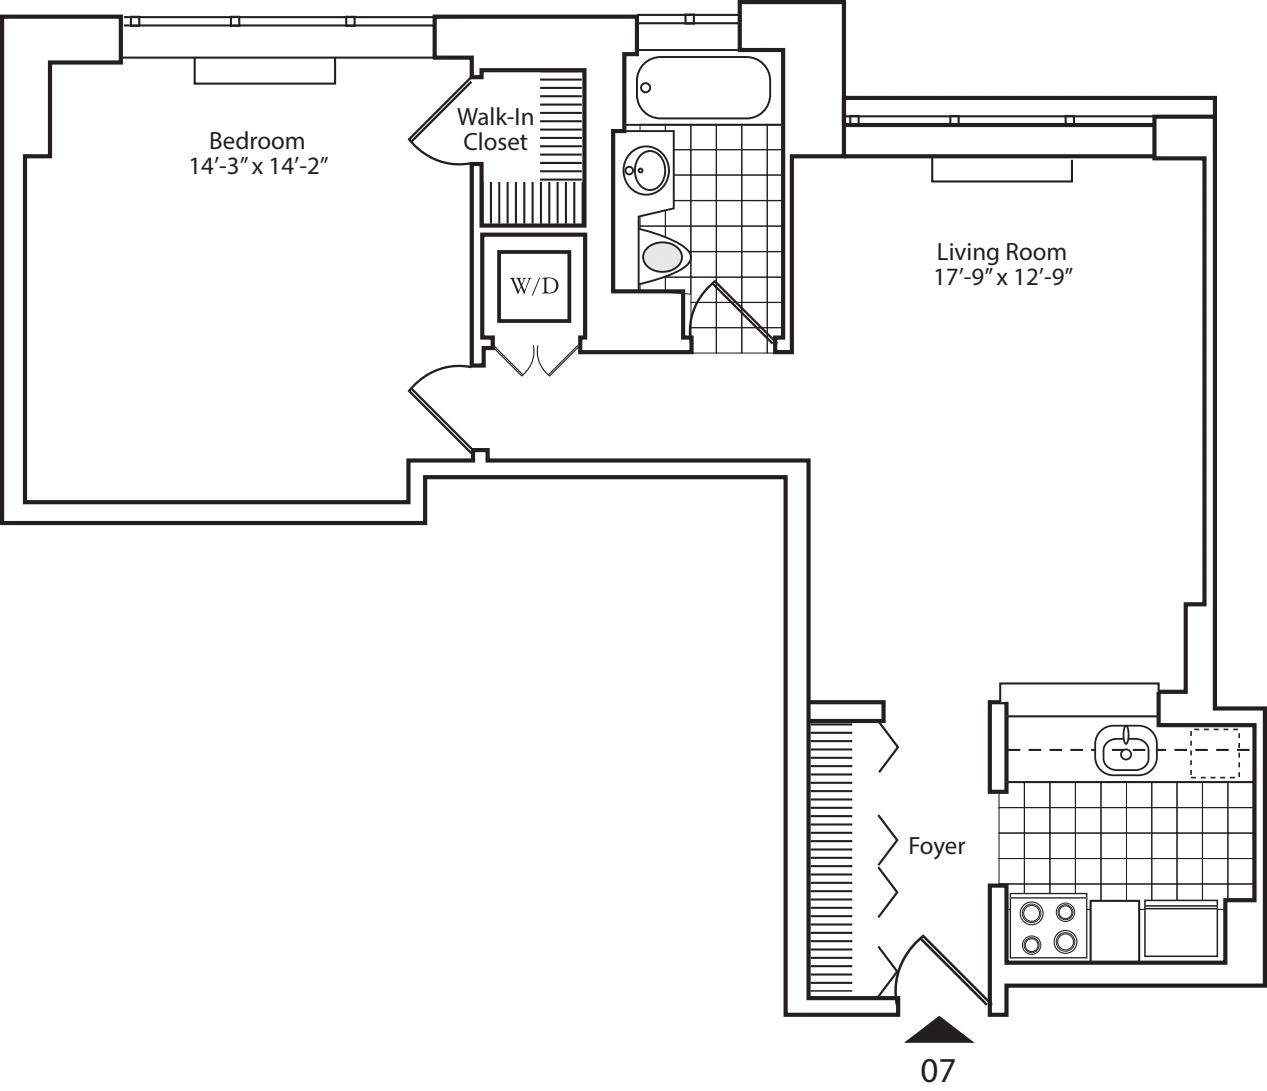 Residence 07 Floors 16-20